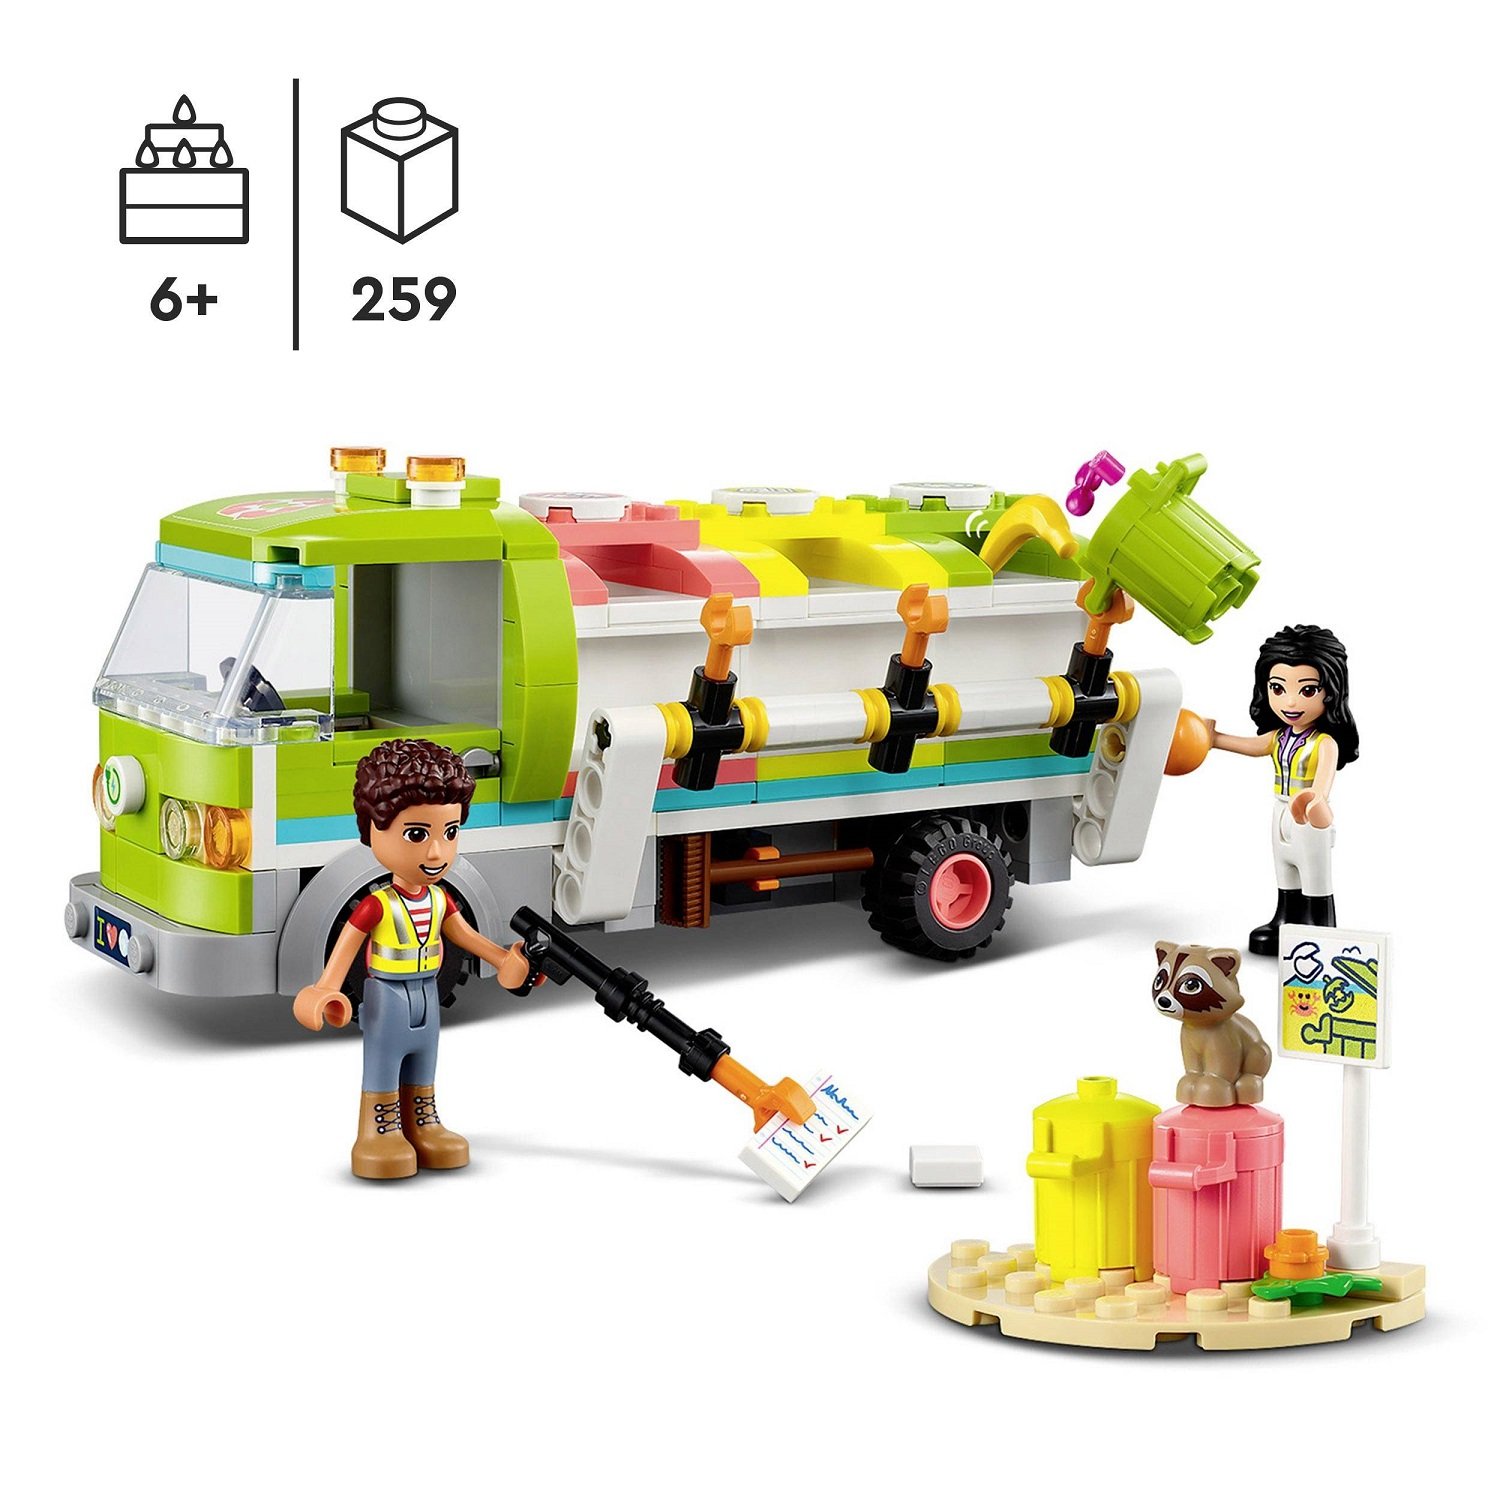 Конструктор LEGO Friends Сміттєпереробна вантажівка, 259 деталей (41712) - фото 3